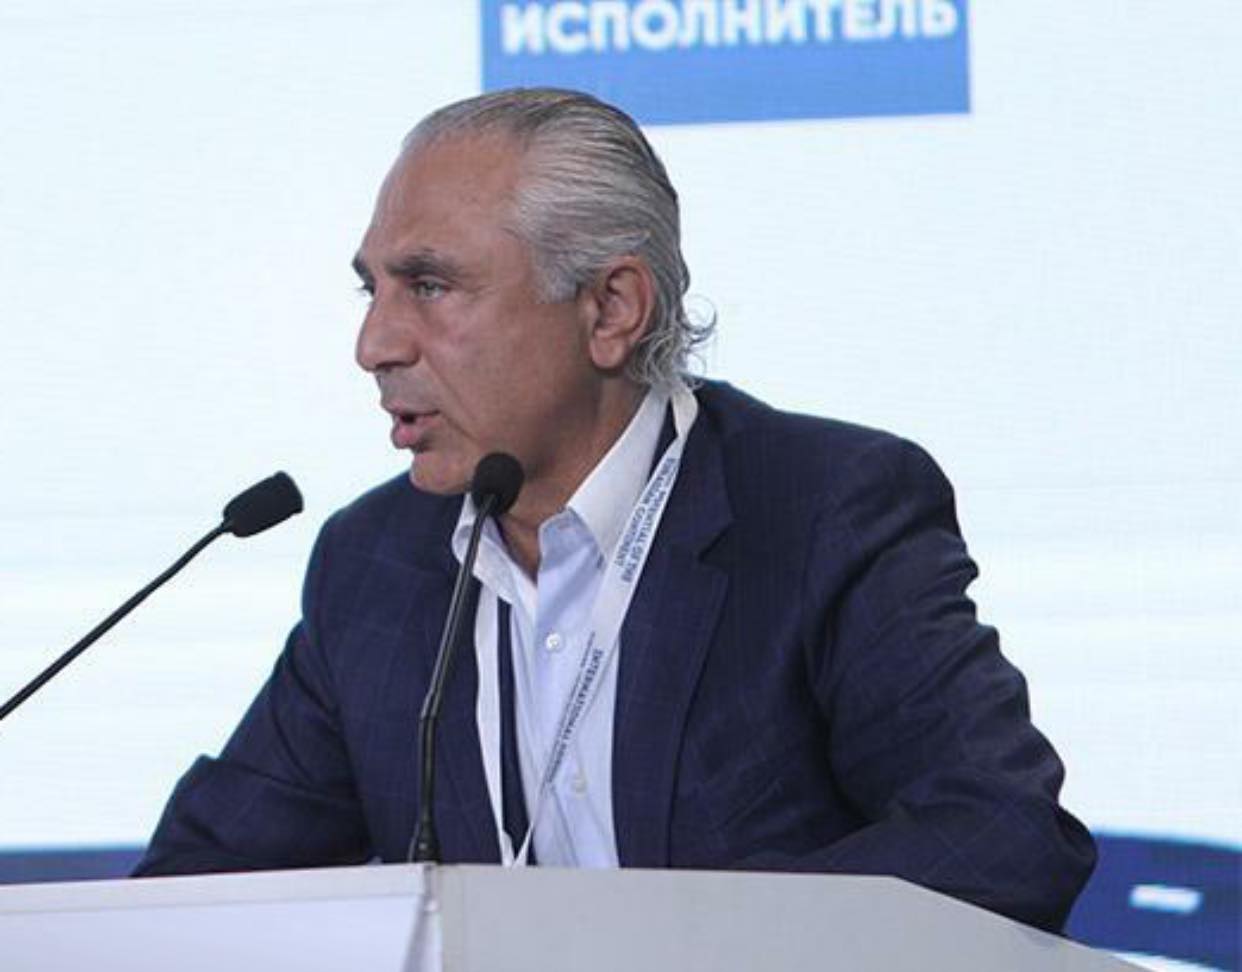 Կառավարությունը պետք է շուտափույթ հրաժարական տա. Արտակ Թովմասյան